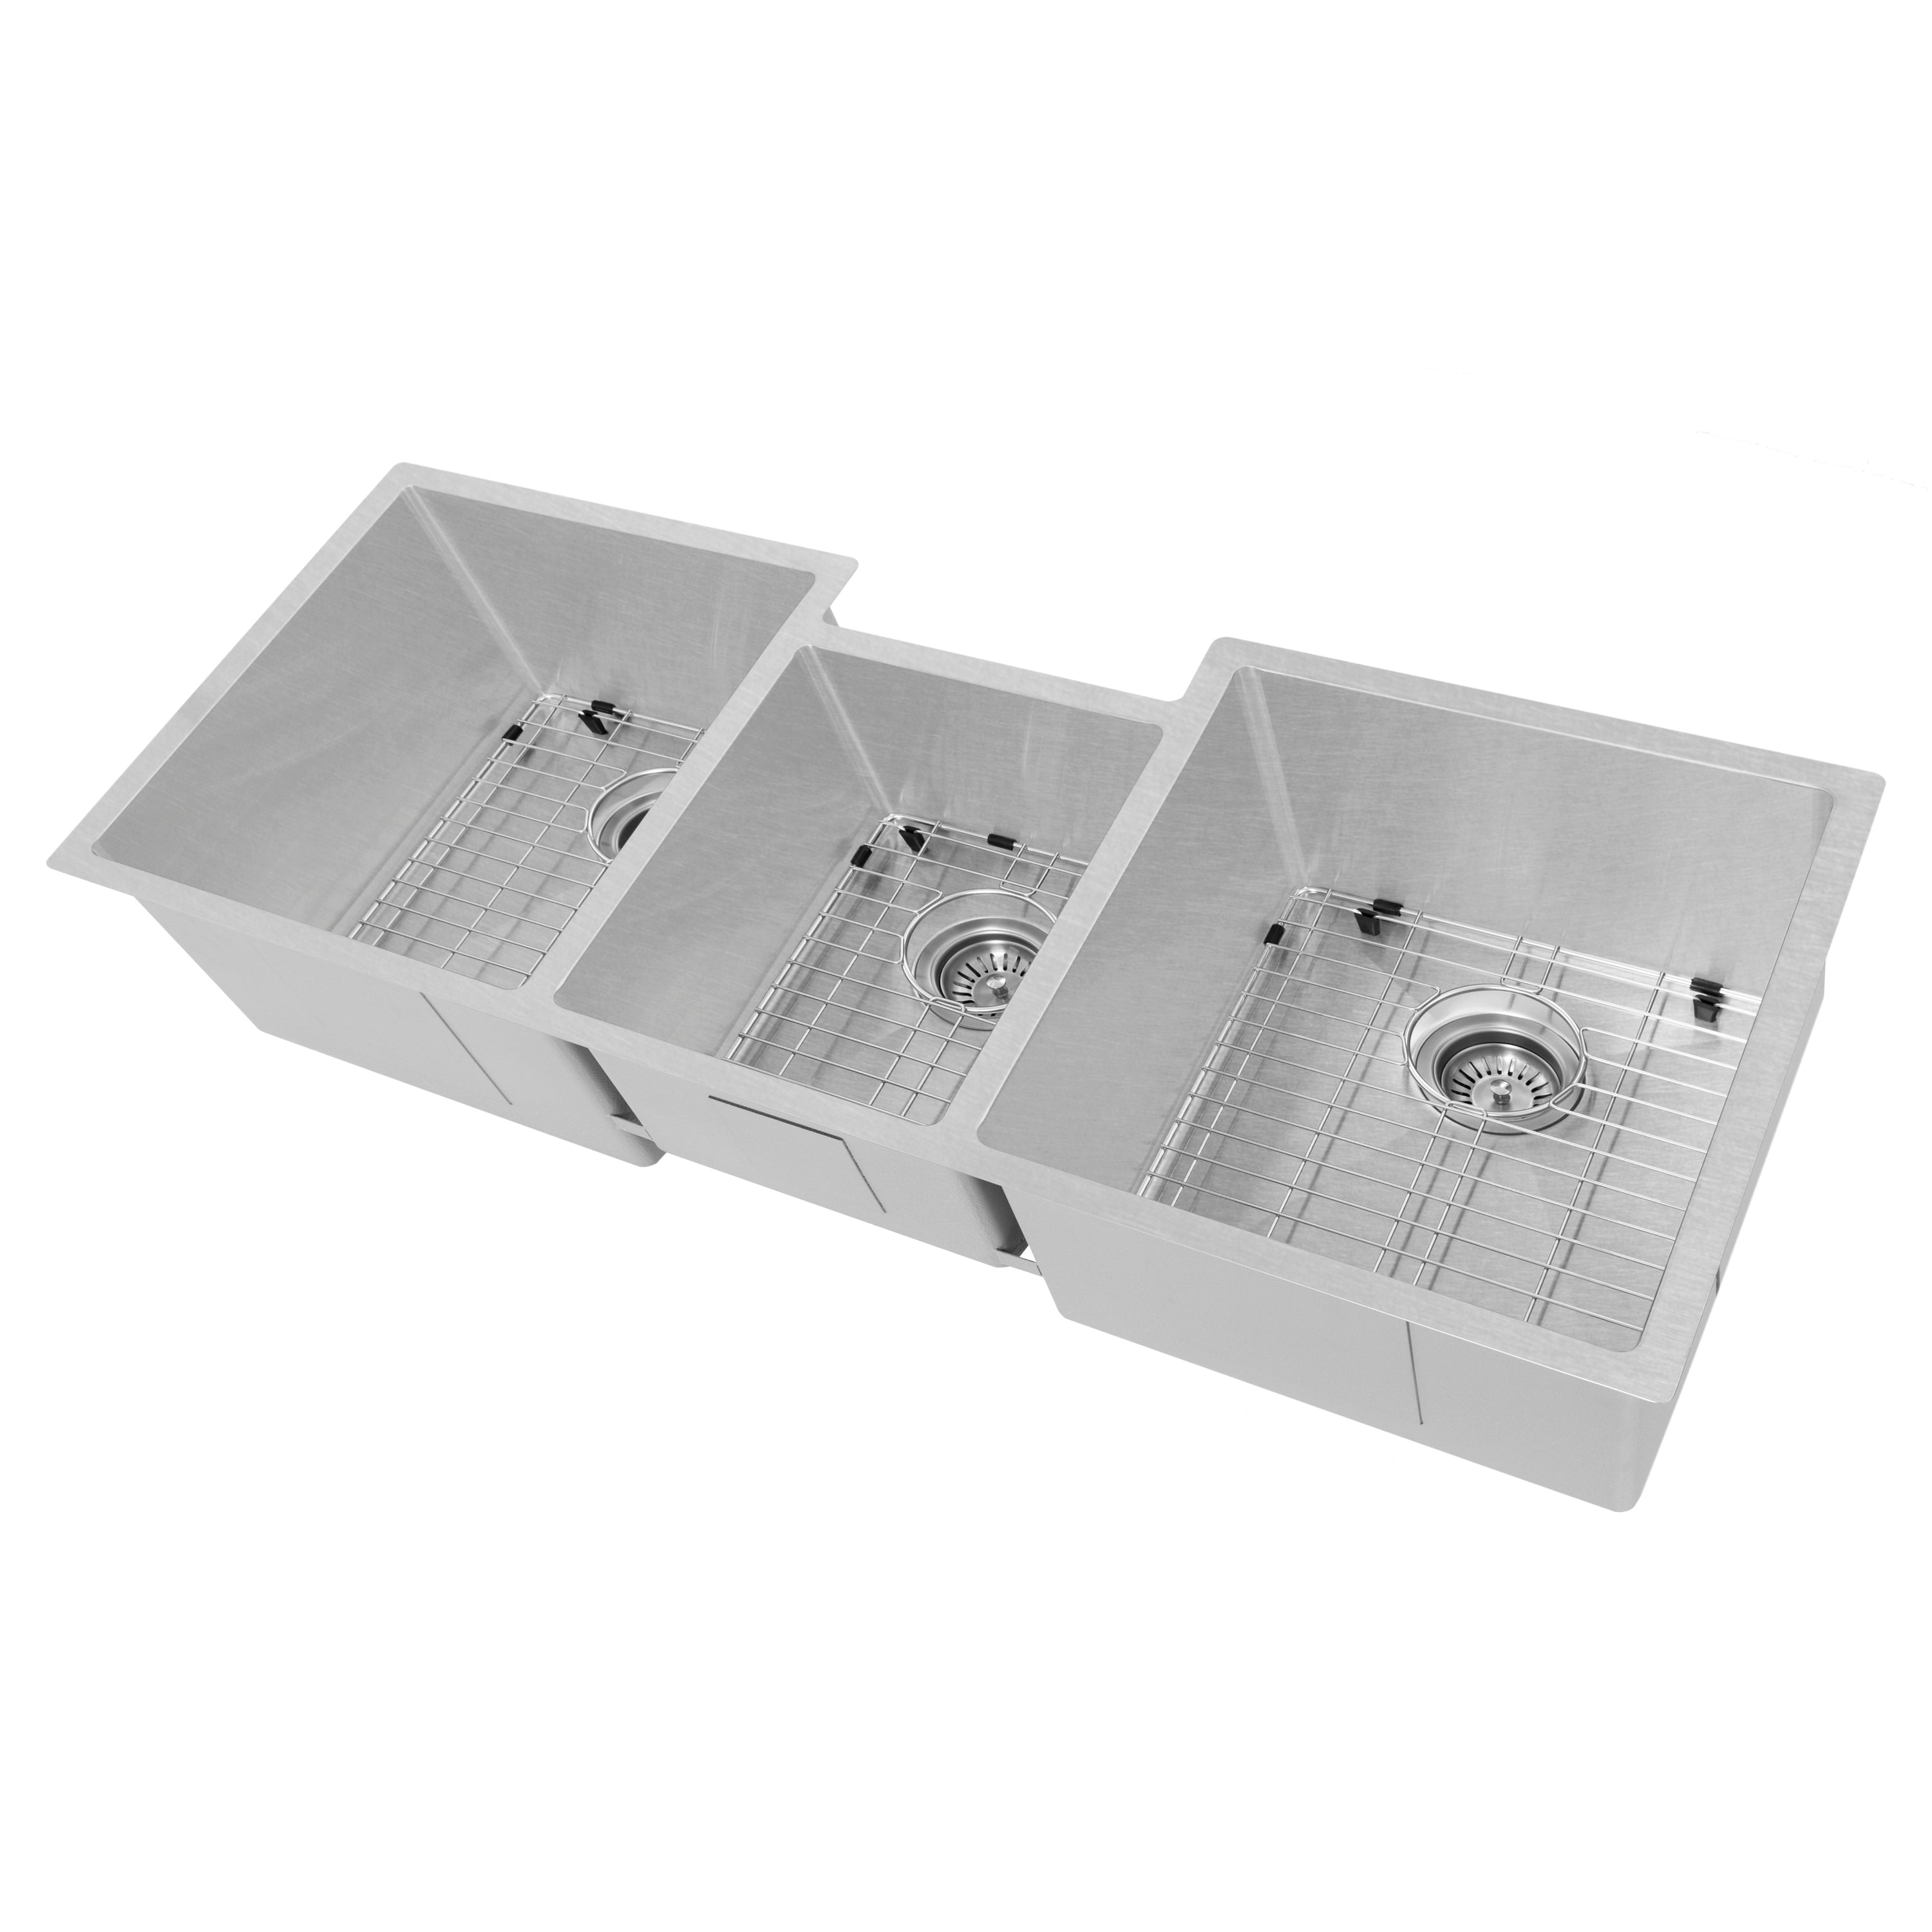 ZLINE 45" Breckenridge Undermount Triple Bowl Scratch Resistant Stainless Steel Kitchen Sink with Bottom Grid (SLT-45S)